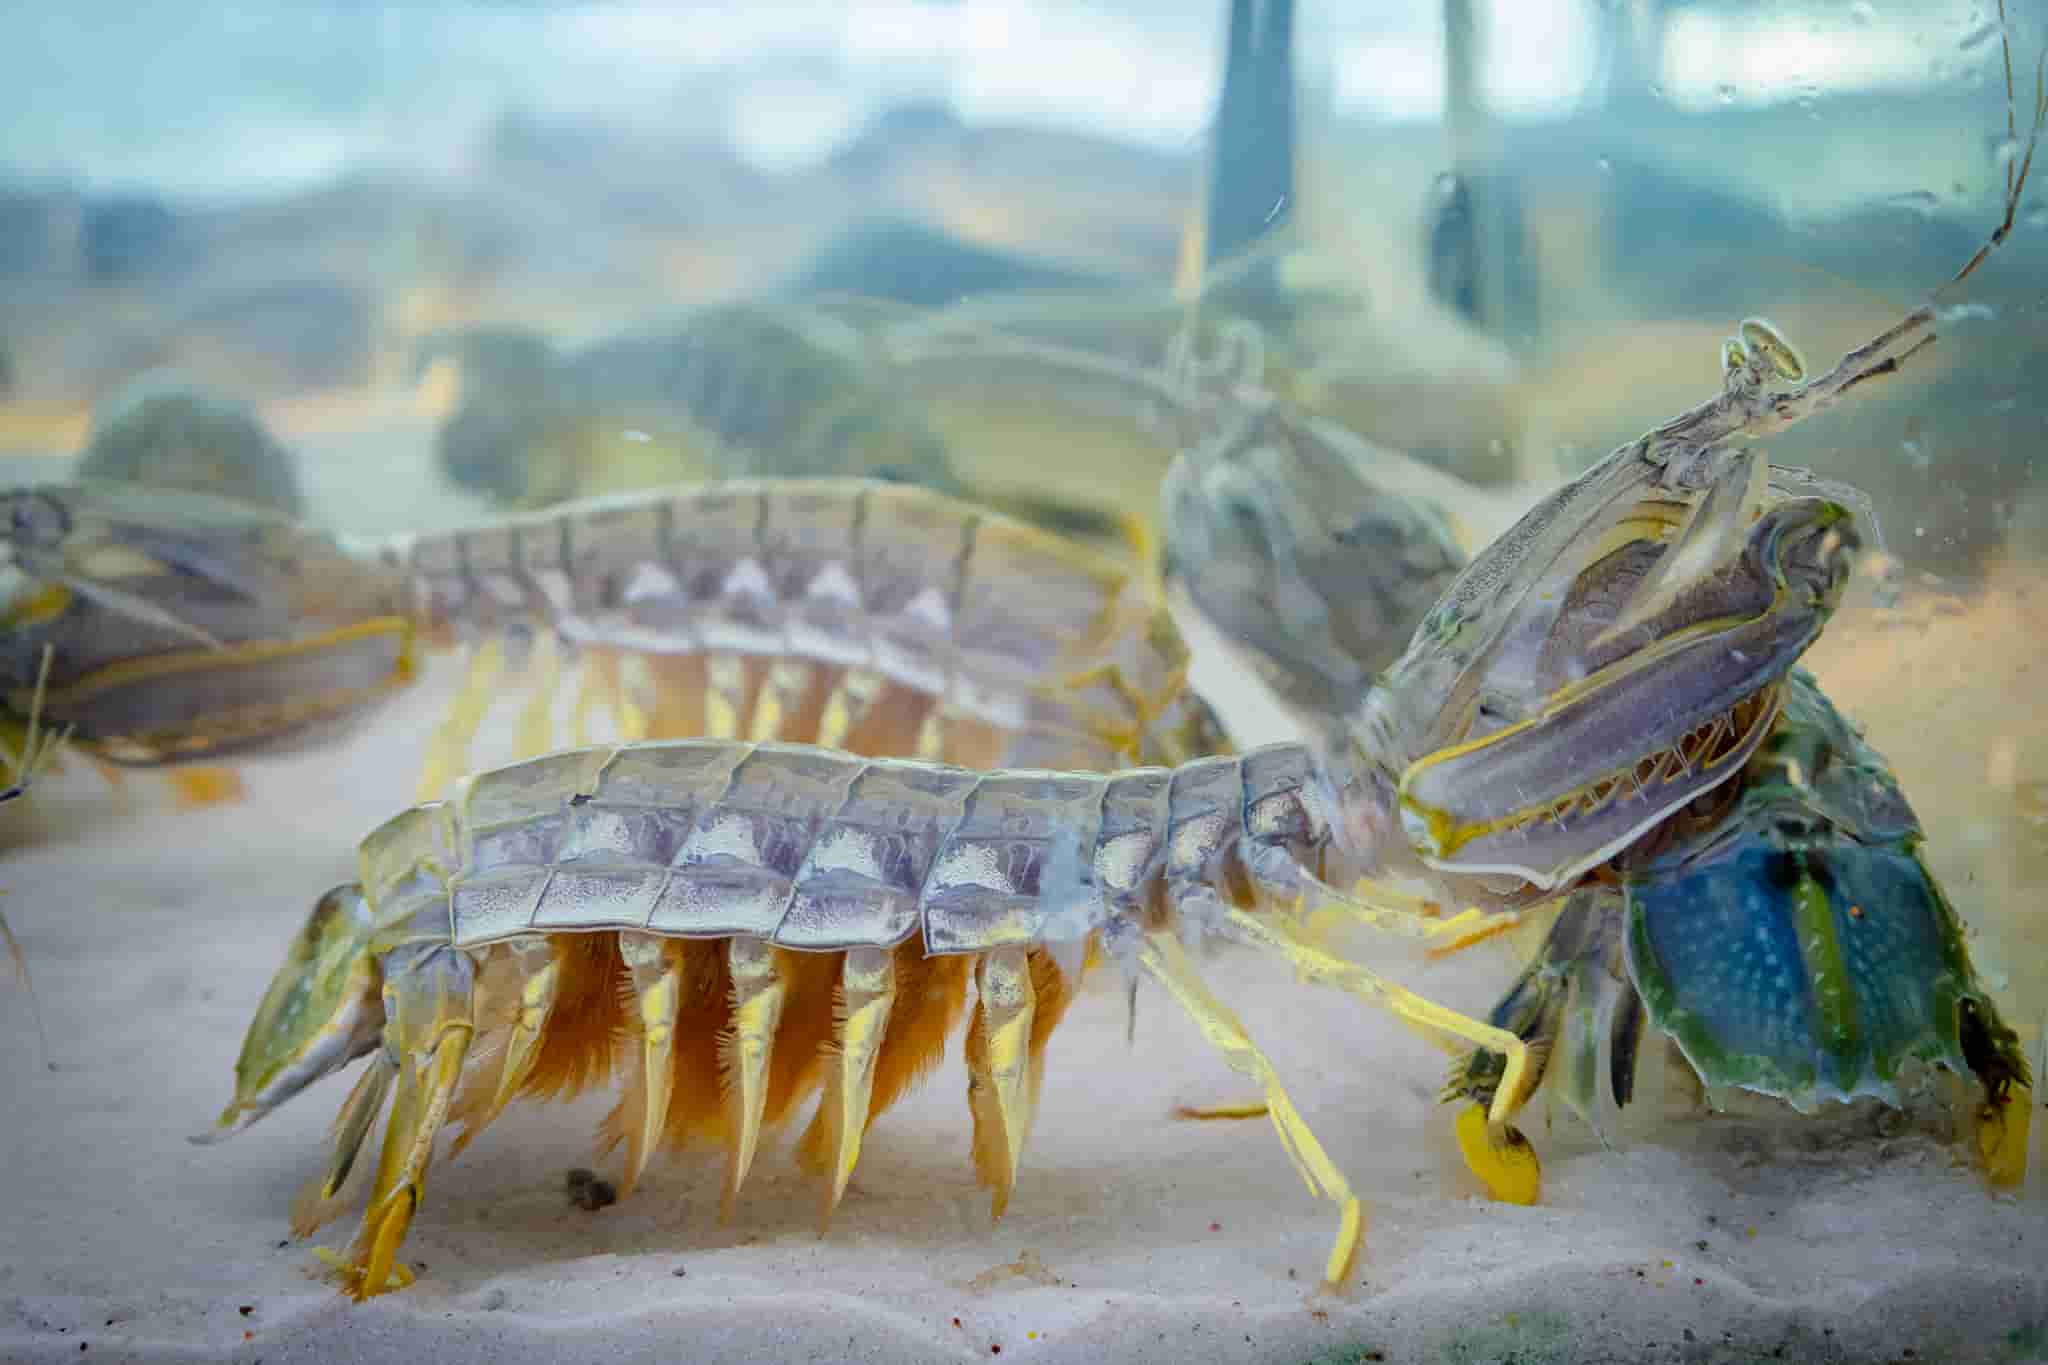 Nhiều loại hải sản còn tươi sống, đang bơi trong bể kính tại nhà hàng